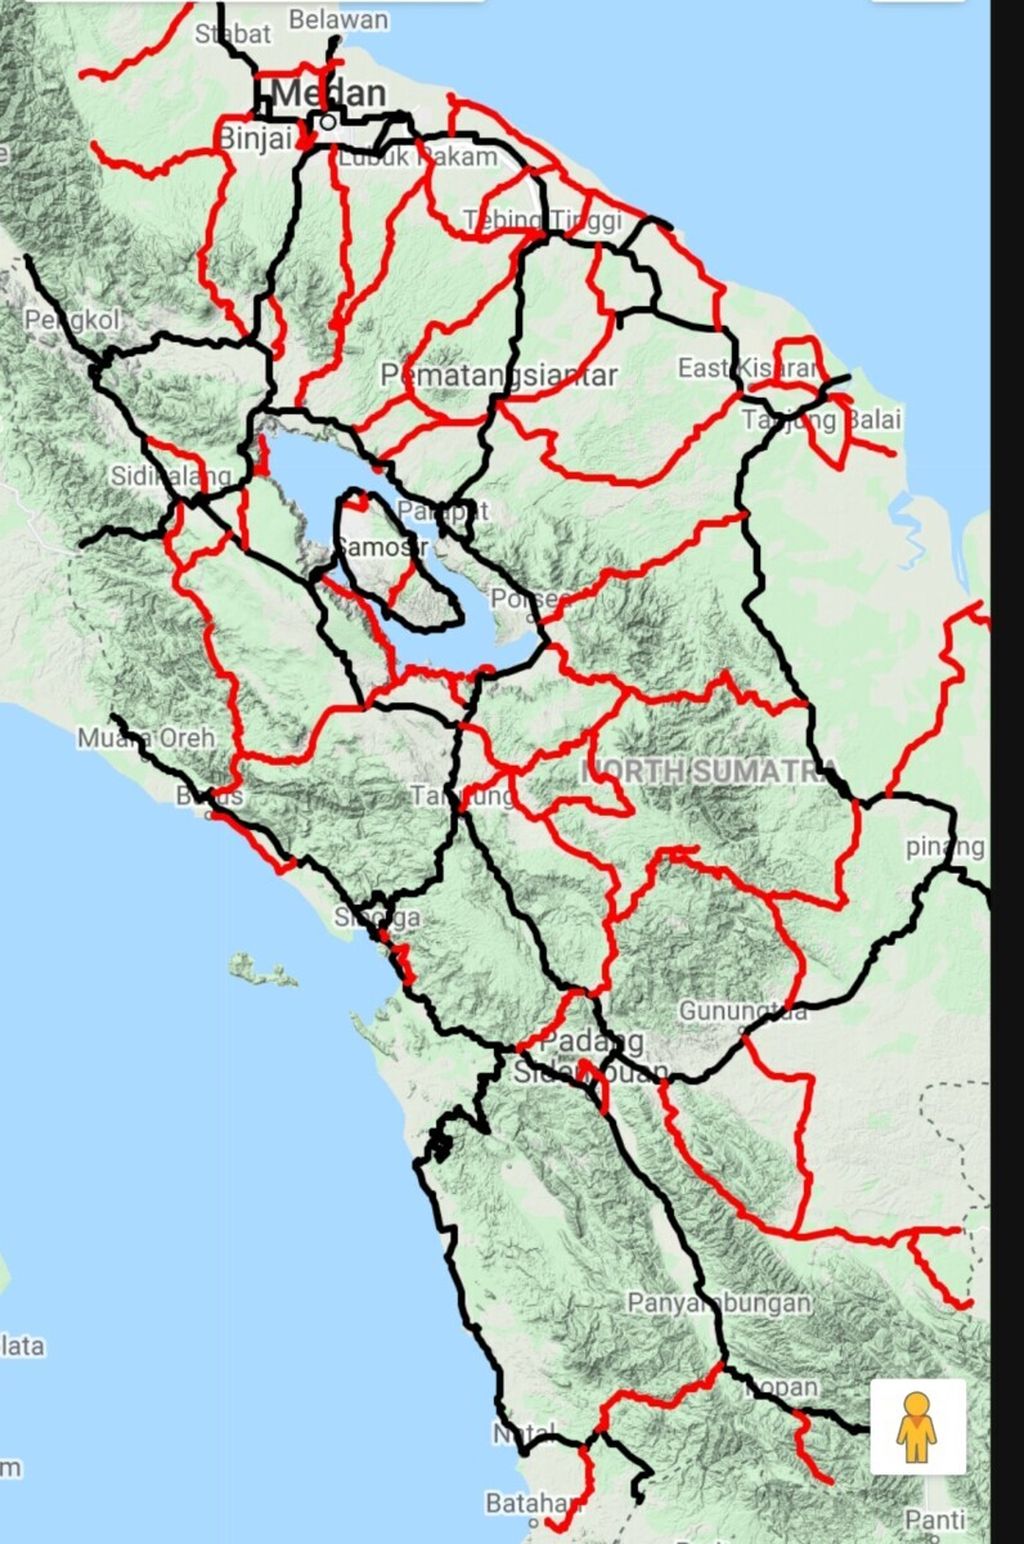 Peta jalan provinsi di Sumatera Utara sepanjang 3.005 kilometer tampak berwarna merah. Garis berwarna hitam adalah jalan nasional.